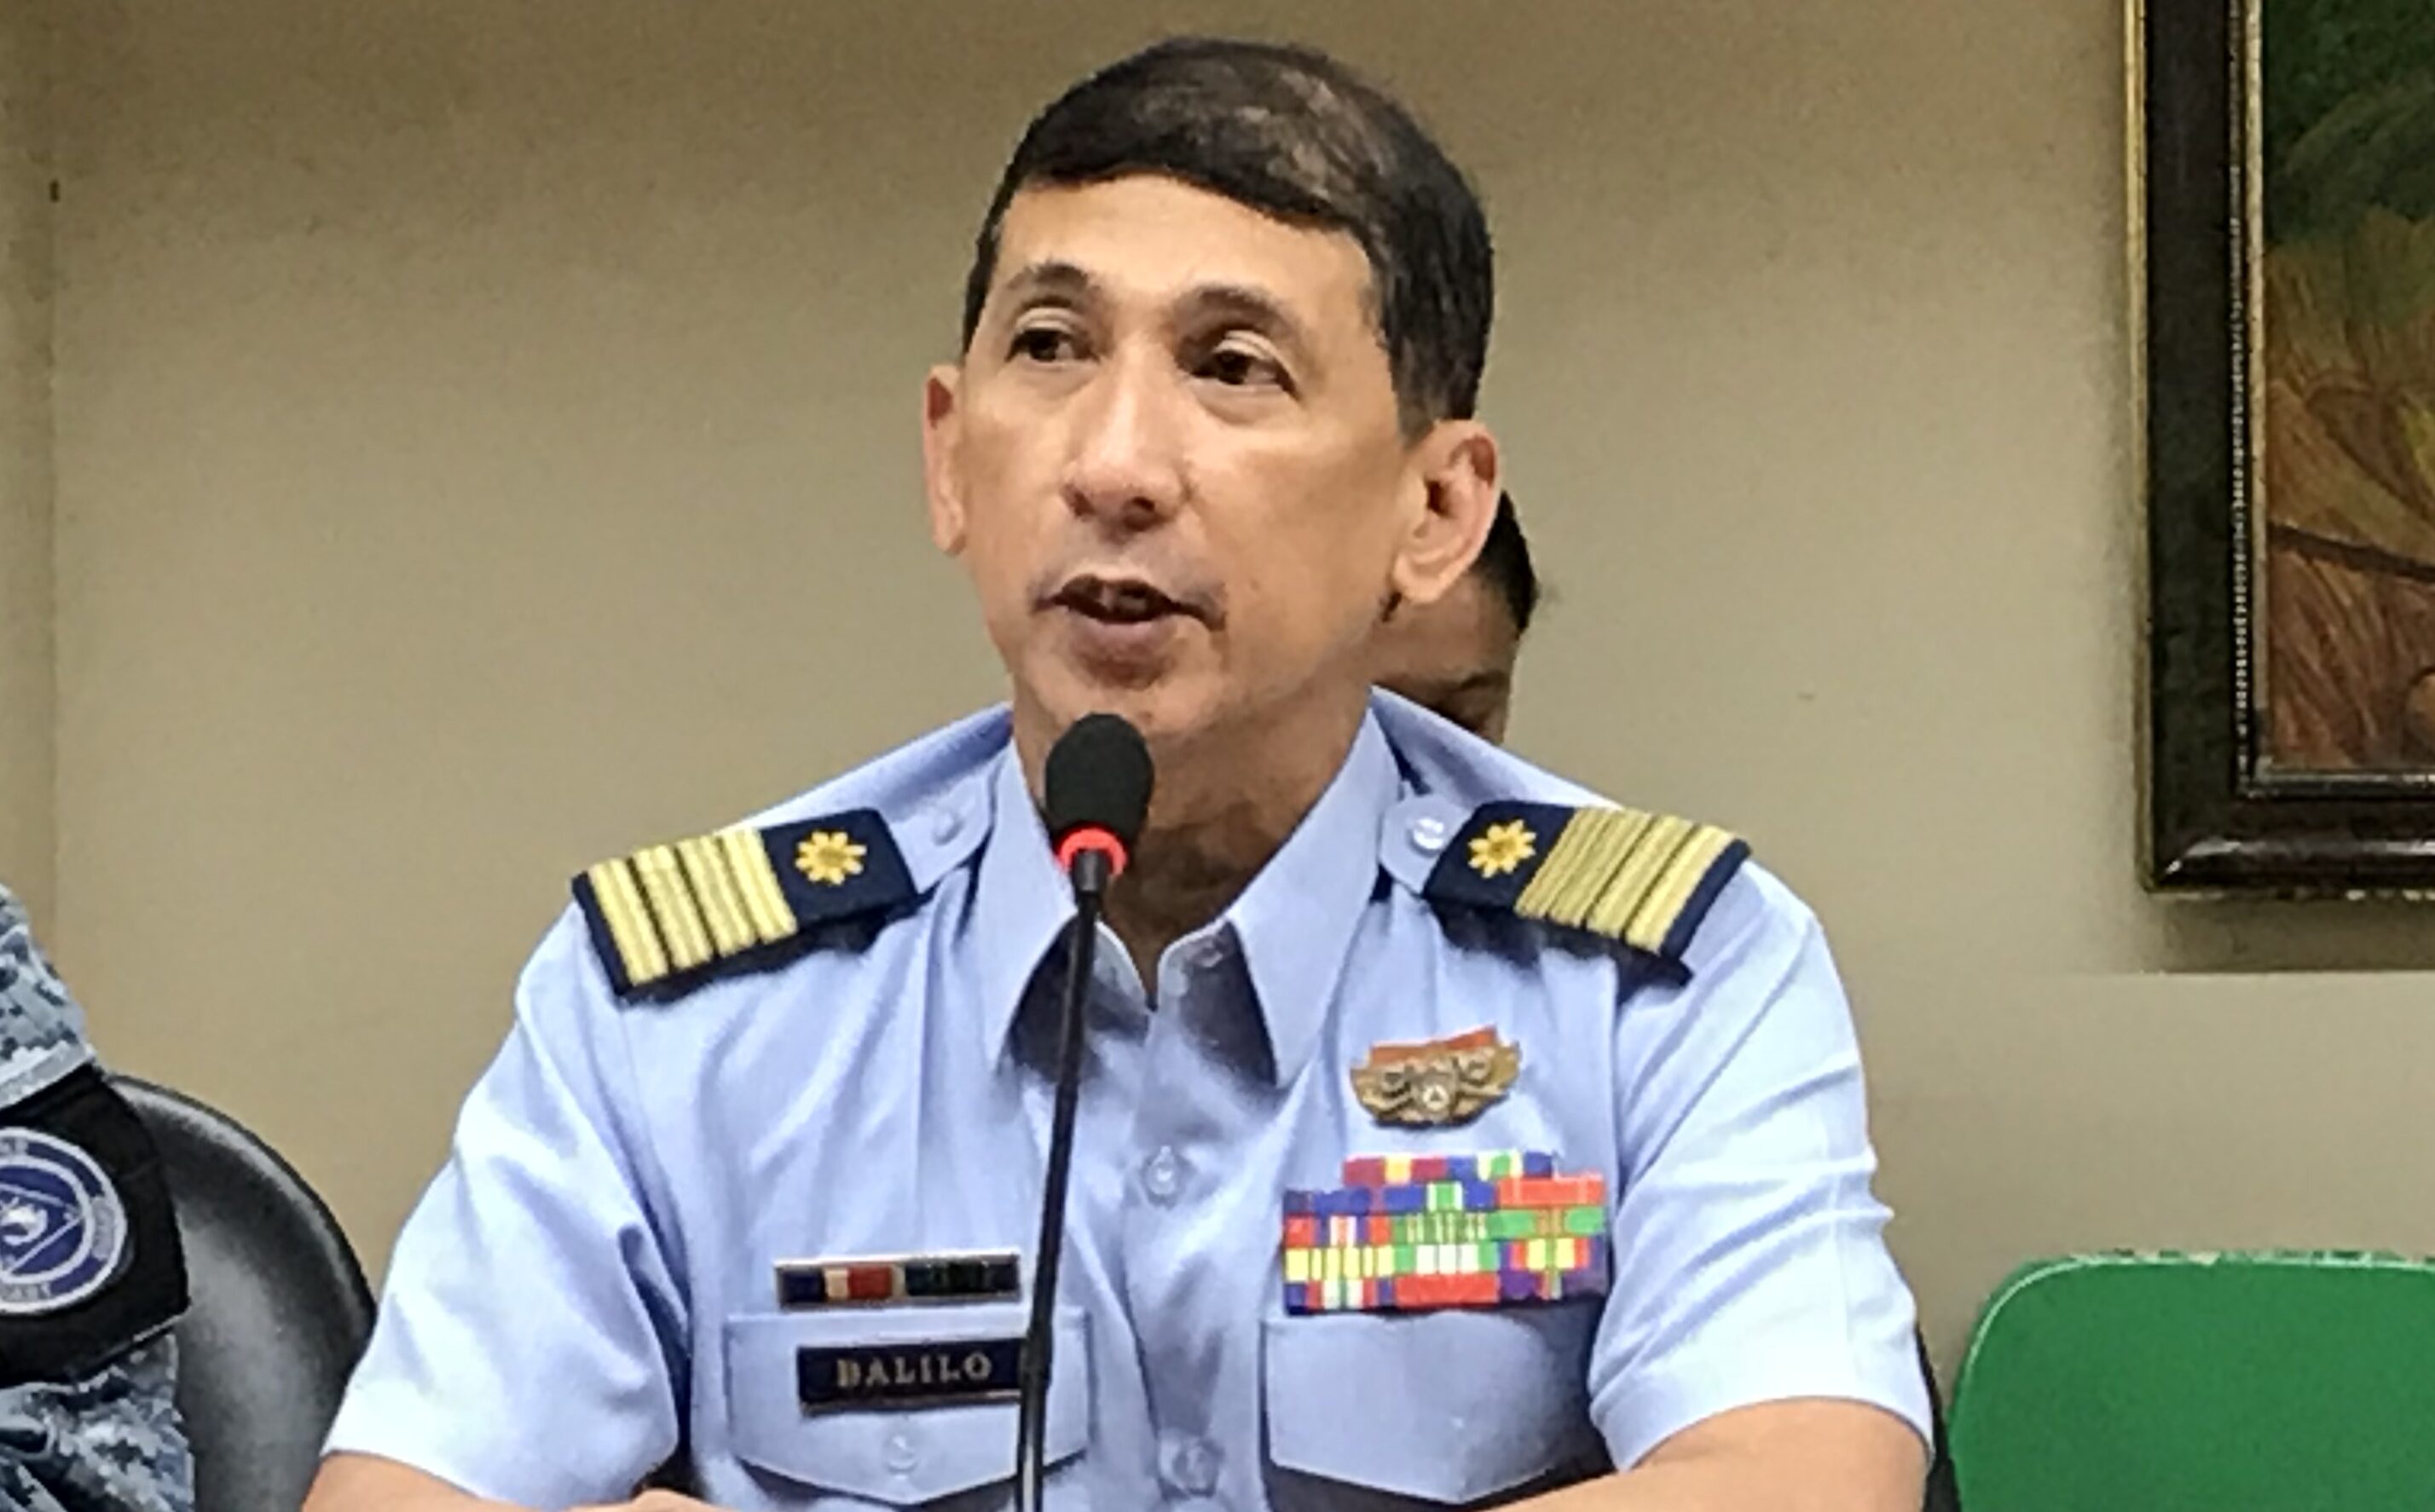 Coast Guard to send 6 vessels to ‘Balikatan’ drills